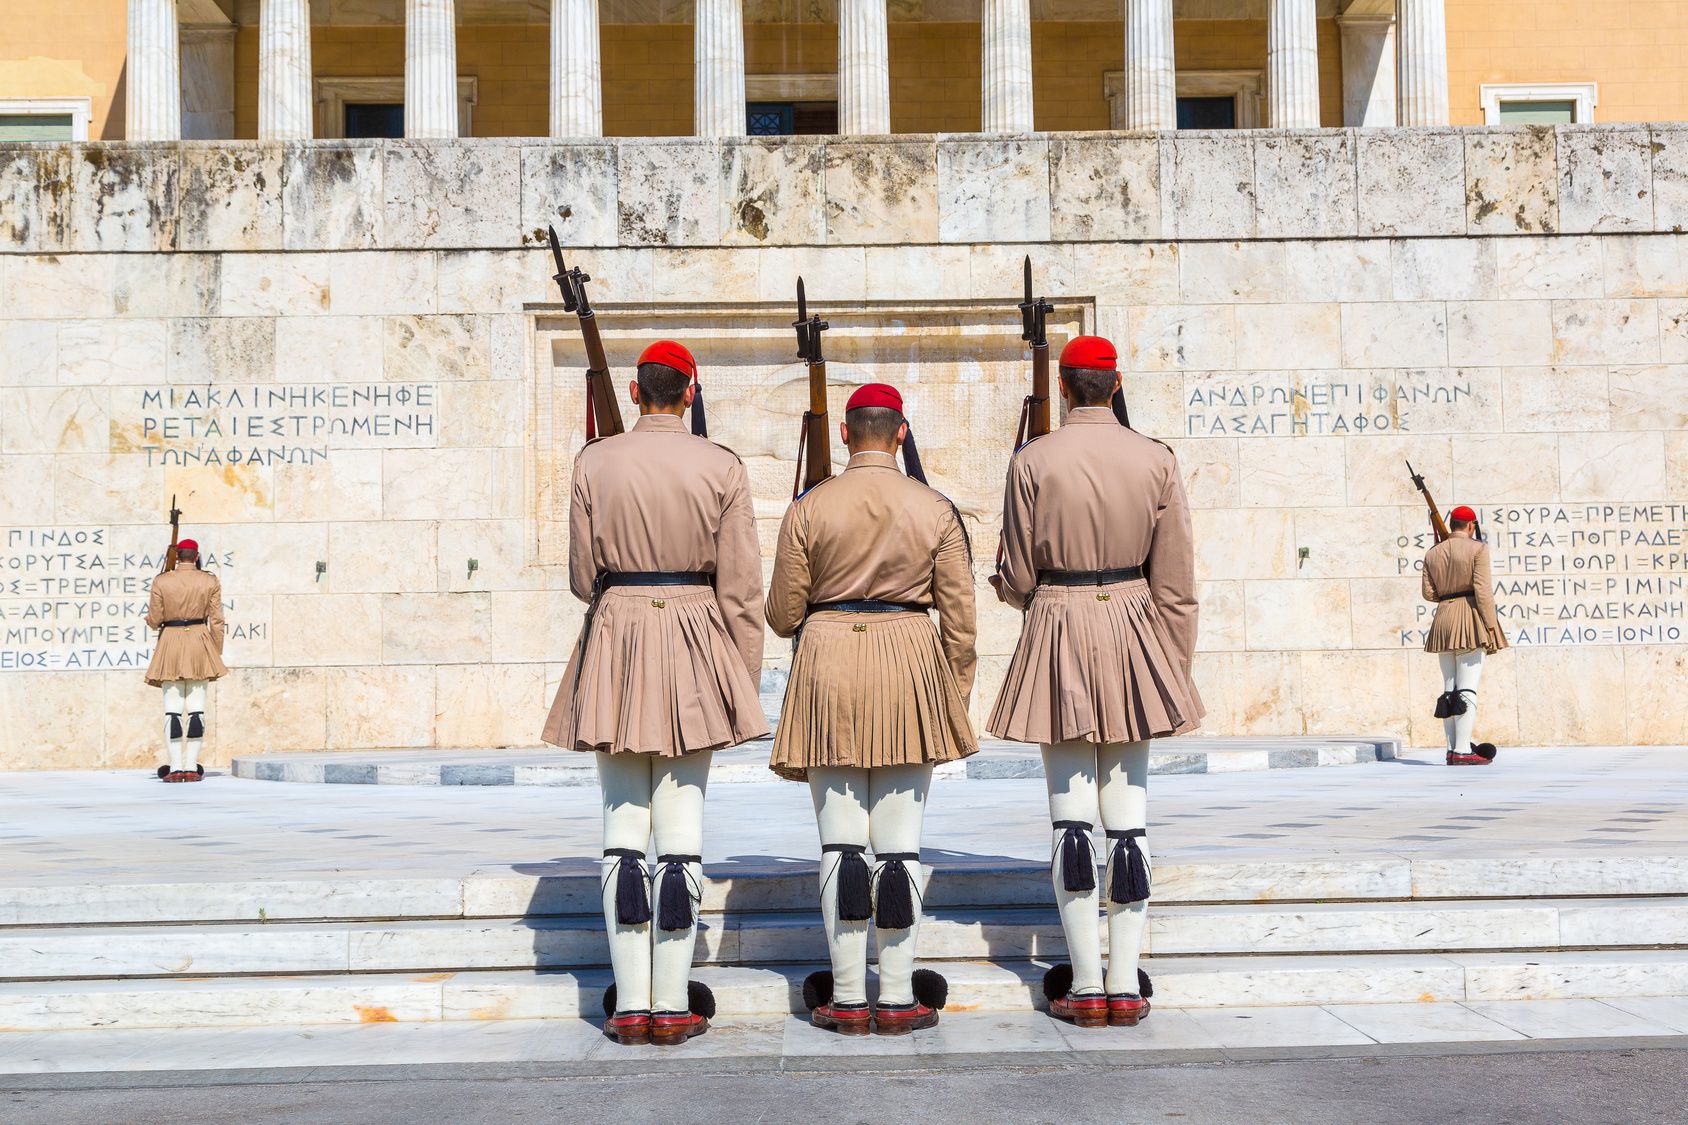 Athen Parlament örségvaltás - Görögországi utazás - OTP Travel Utazási Iroda